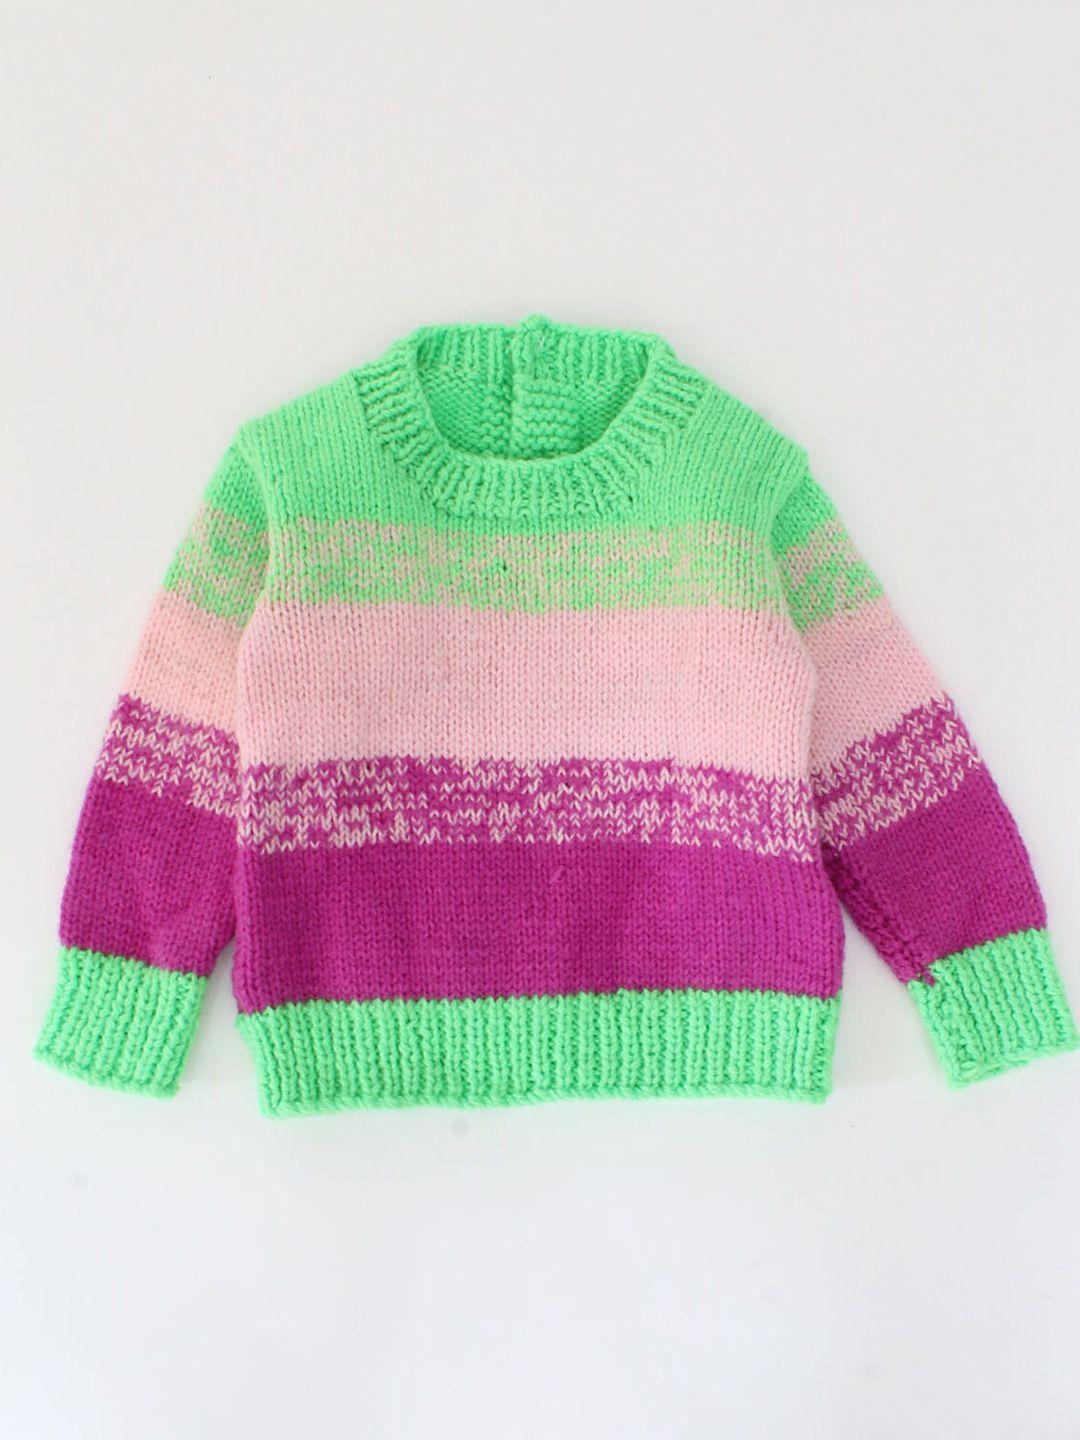 woonie-unisex-kids-green-&-pink-striped-pullover